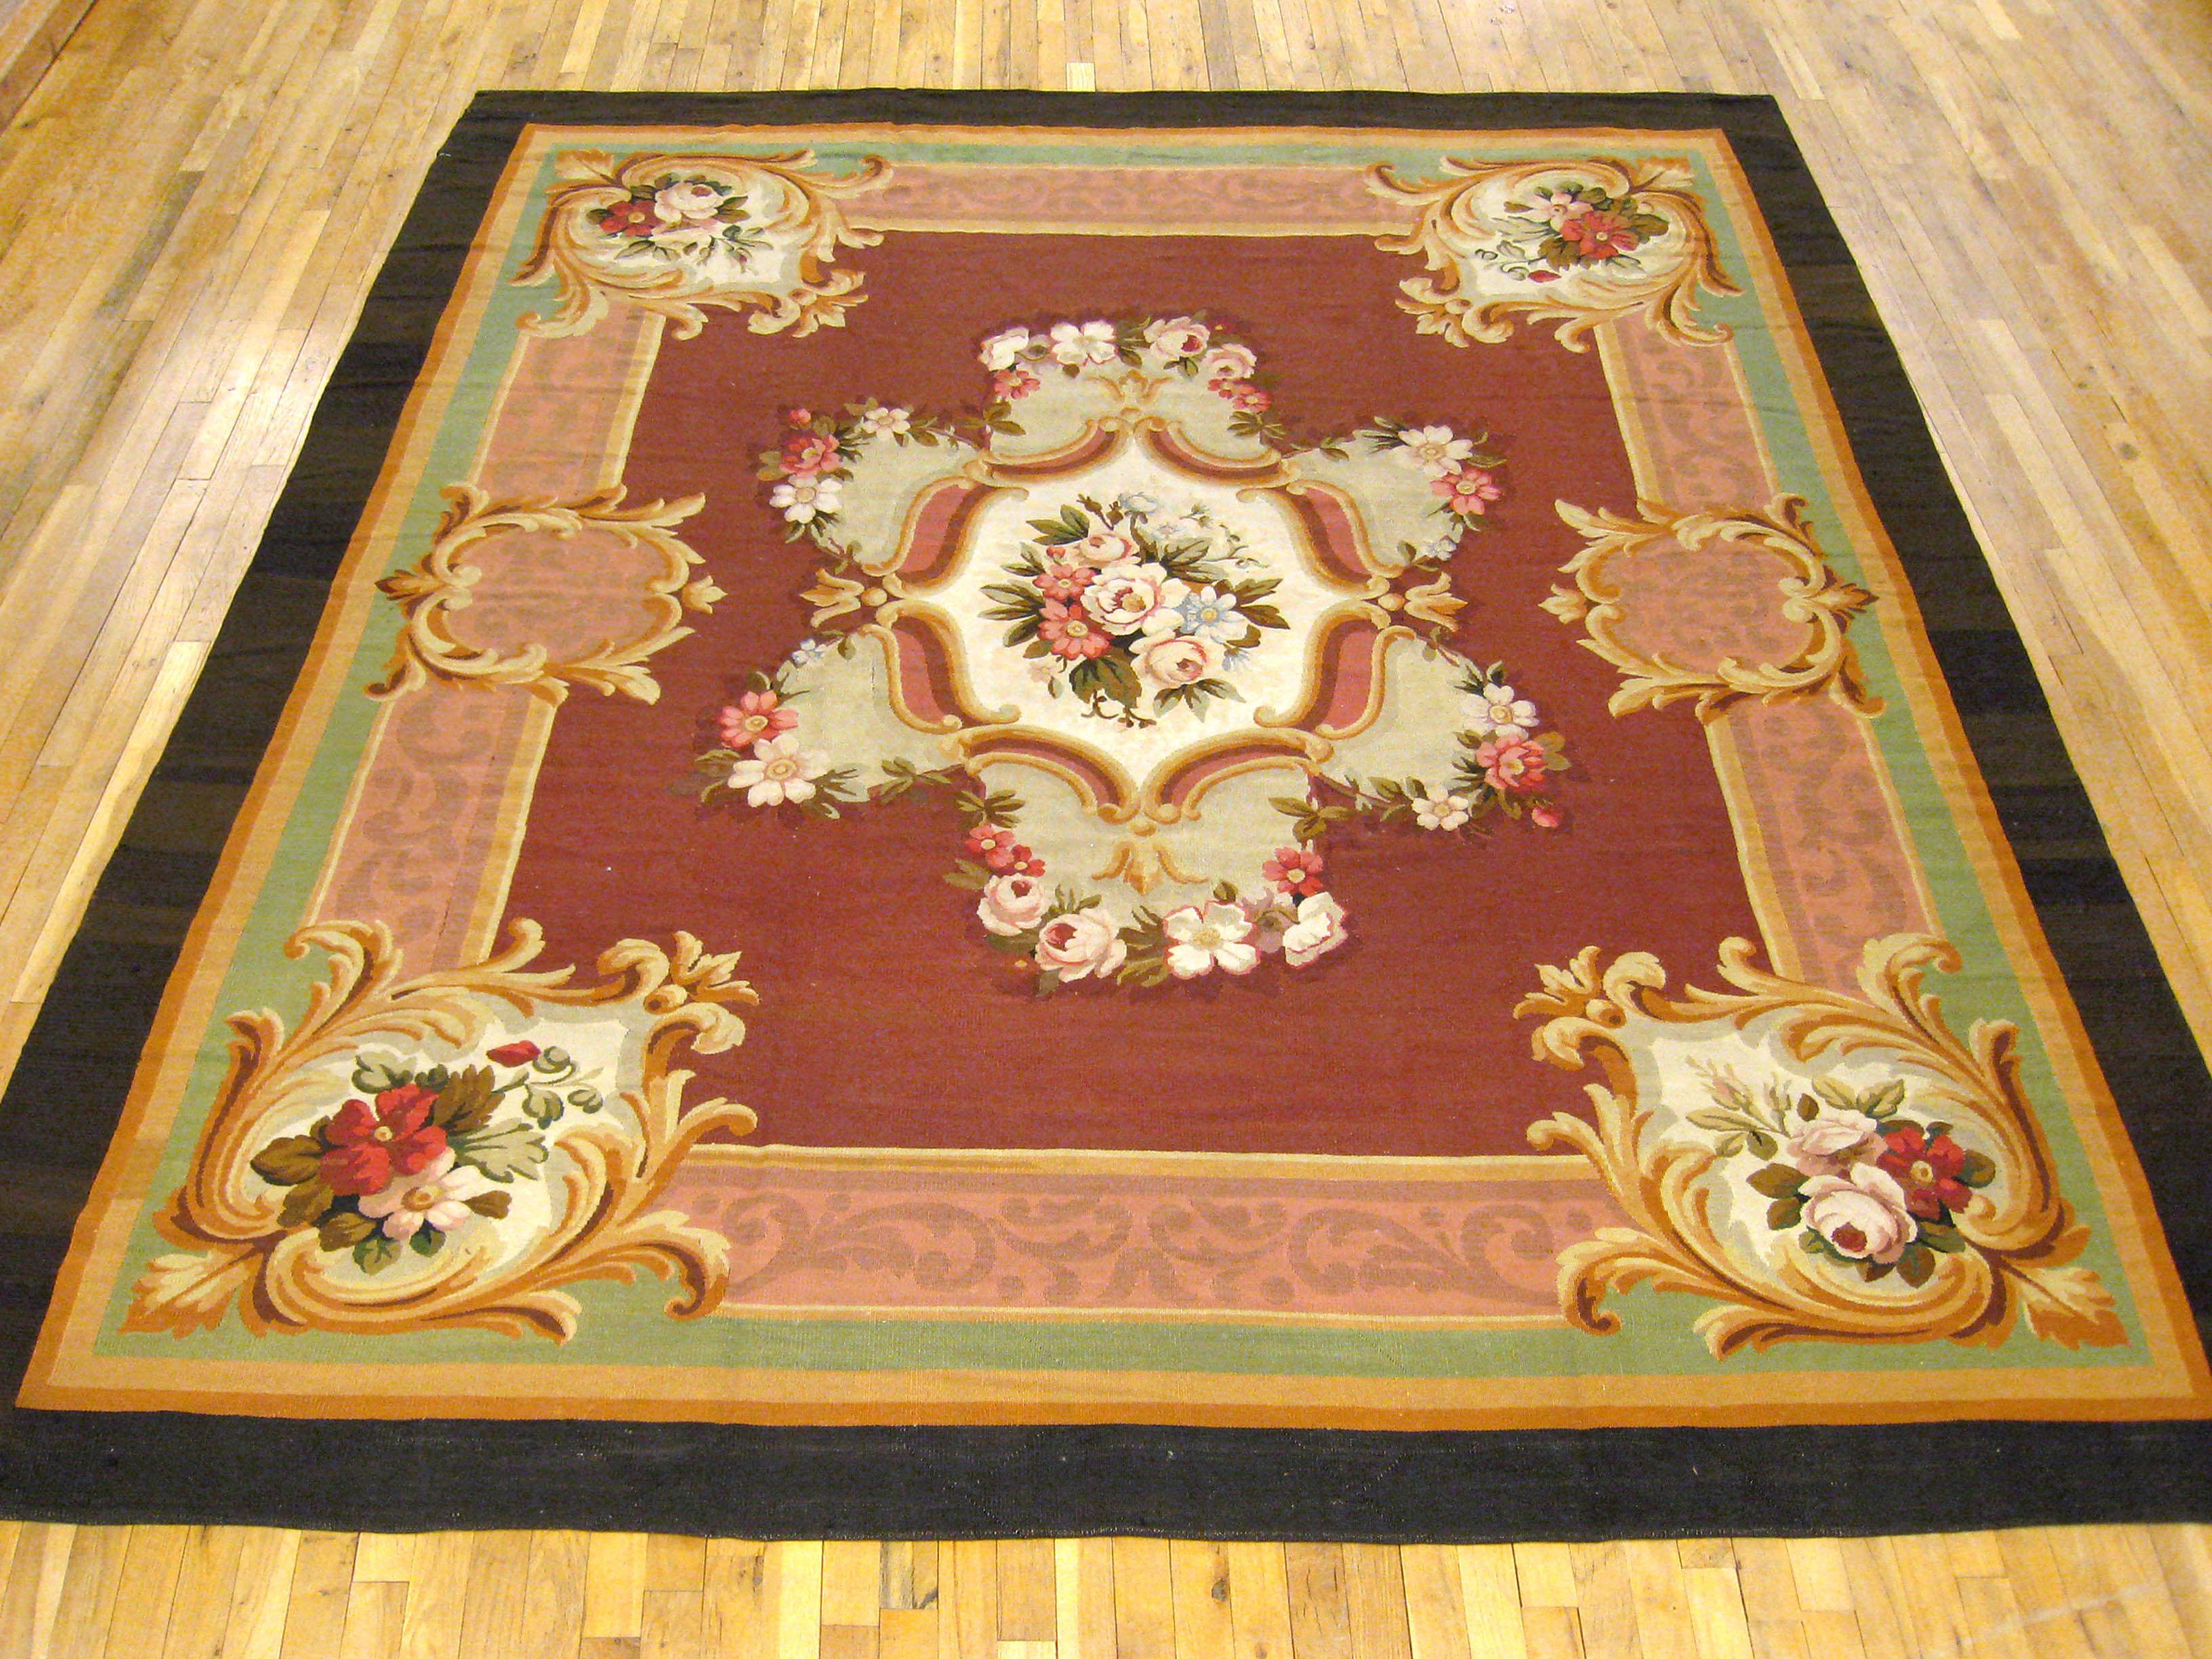 Ancien tapis français d'Aubusson, taille de chambre, circa 1880

Tapis d'Aubusson français ancien, unique en son genre, noué à la main avec des poils de laine doux. Ce ravissant tapis en laine noué à la main présente un médaillon central sur le